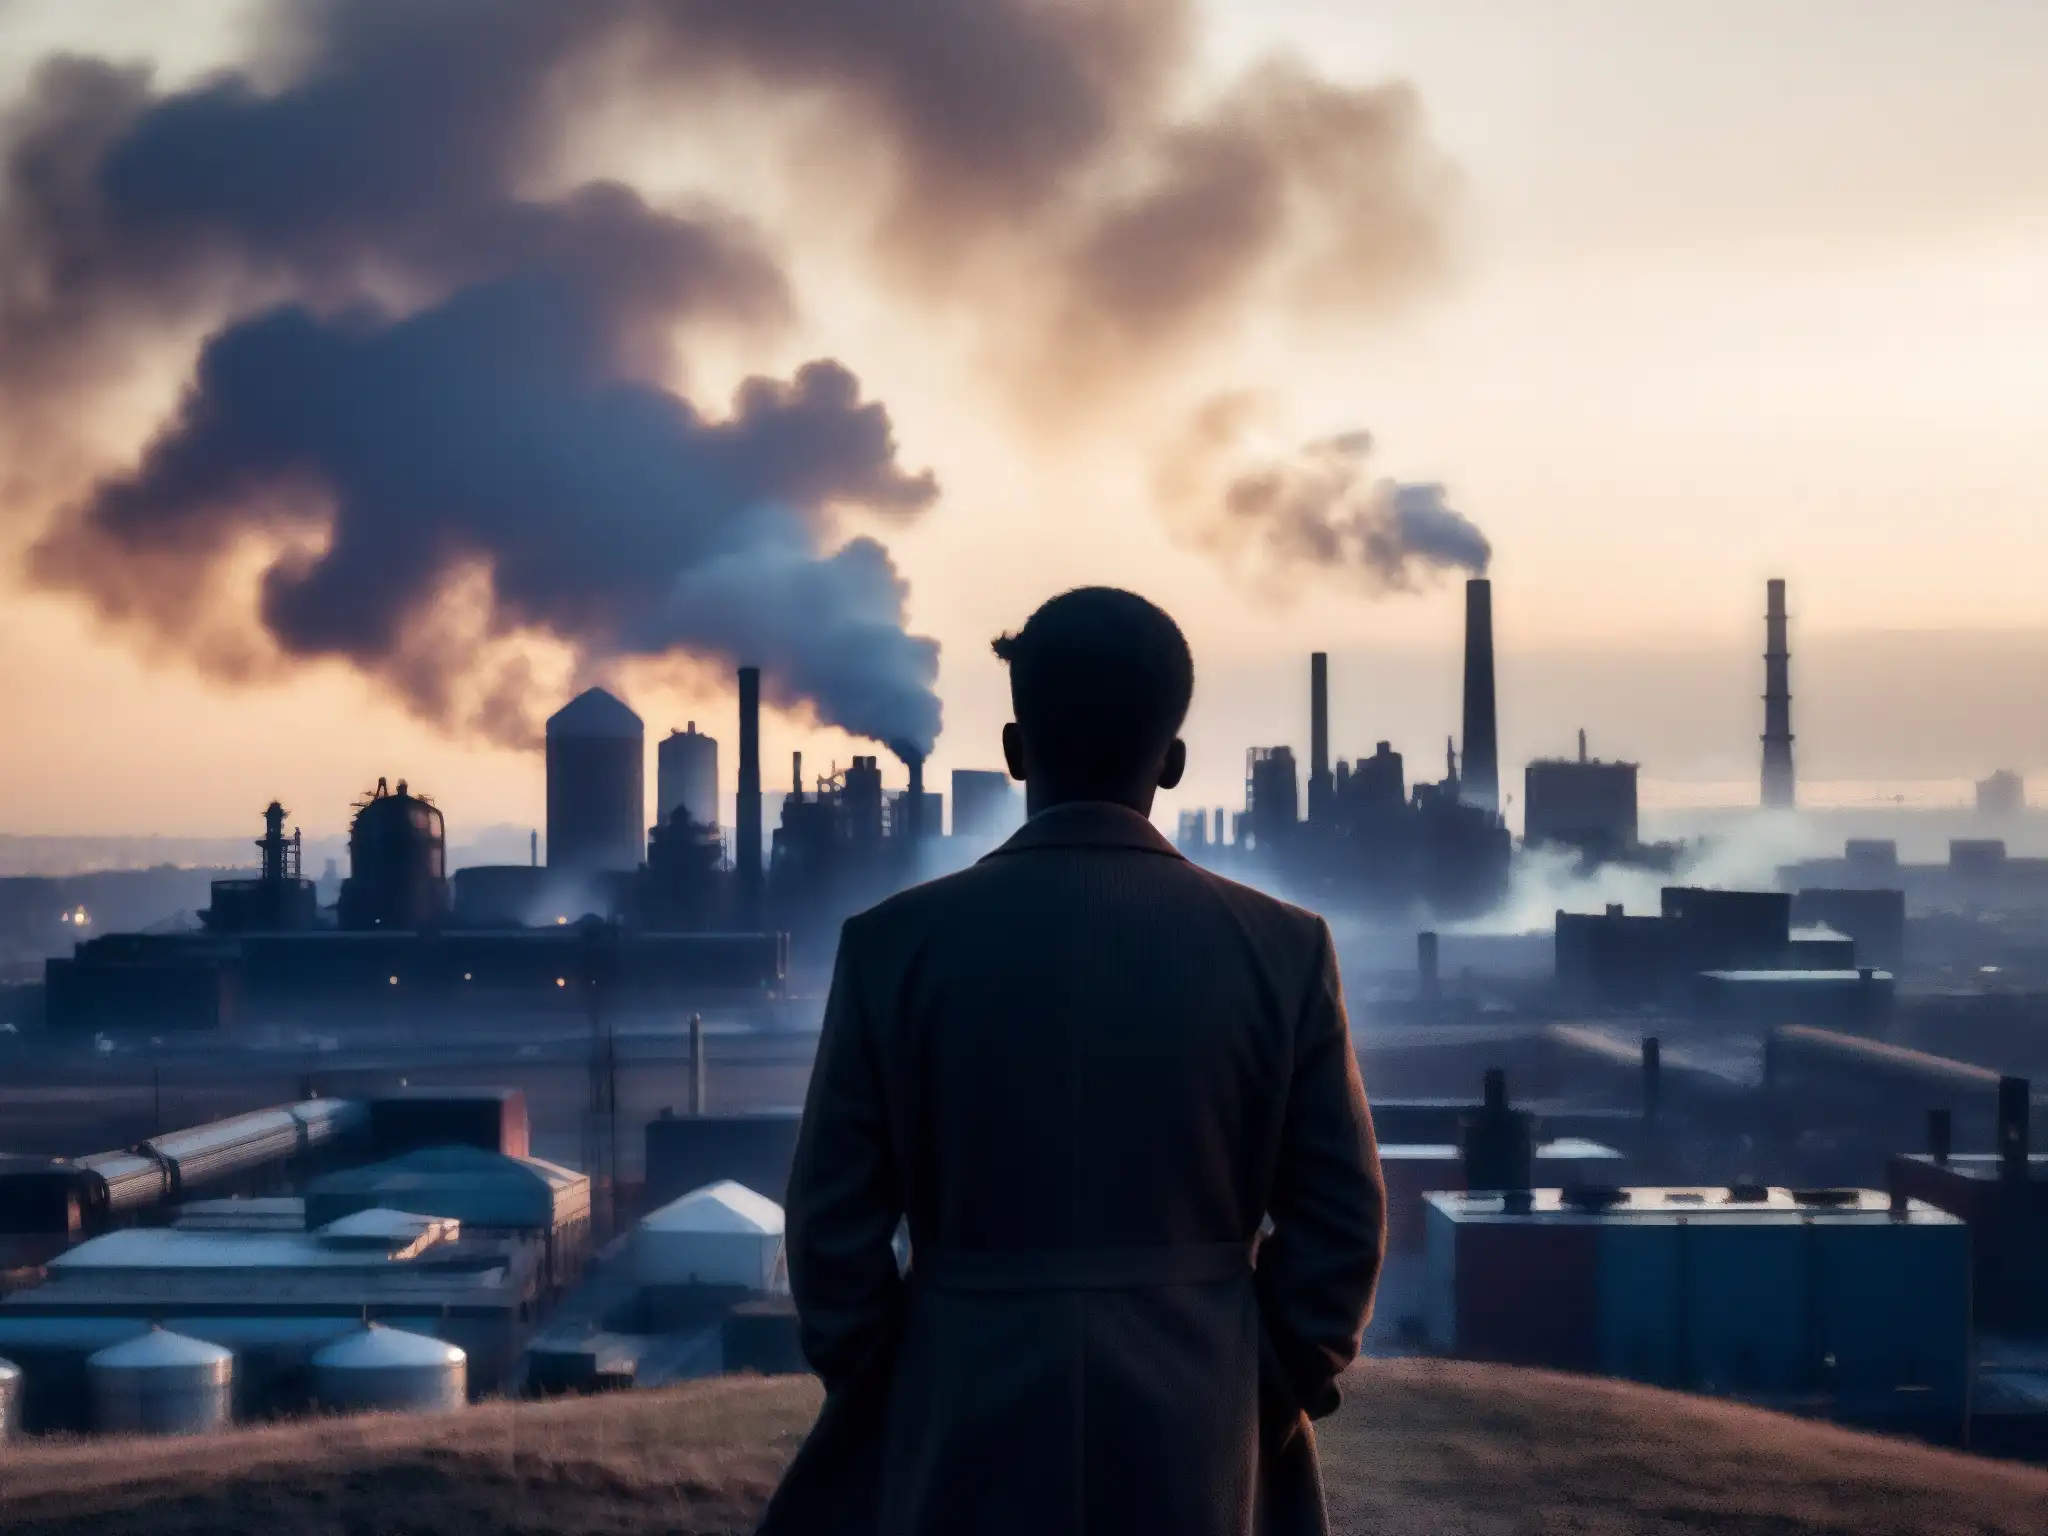 Persona desconcertada observa la misteriosa ciudad industrializada envuelta en neblina, conectada al misterioso sonido global 'The Hum'